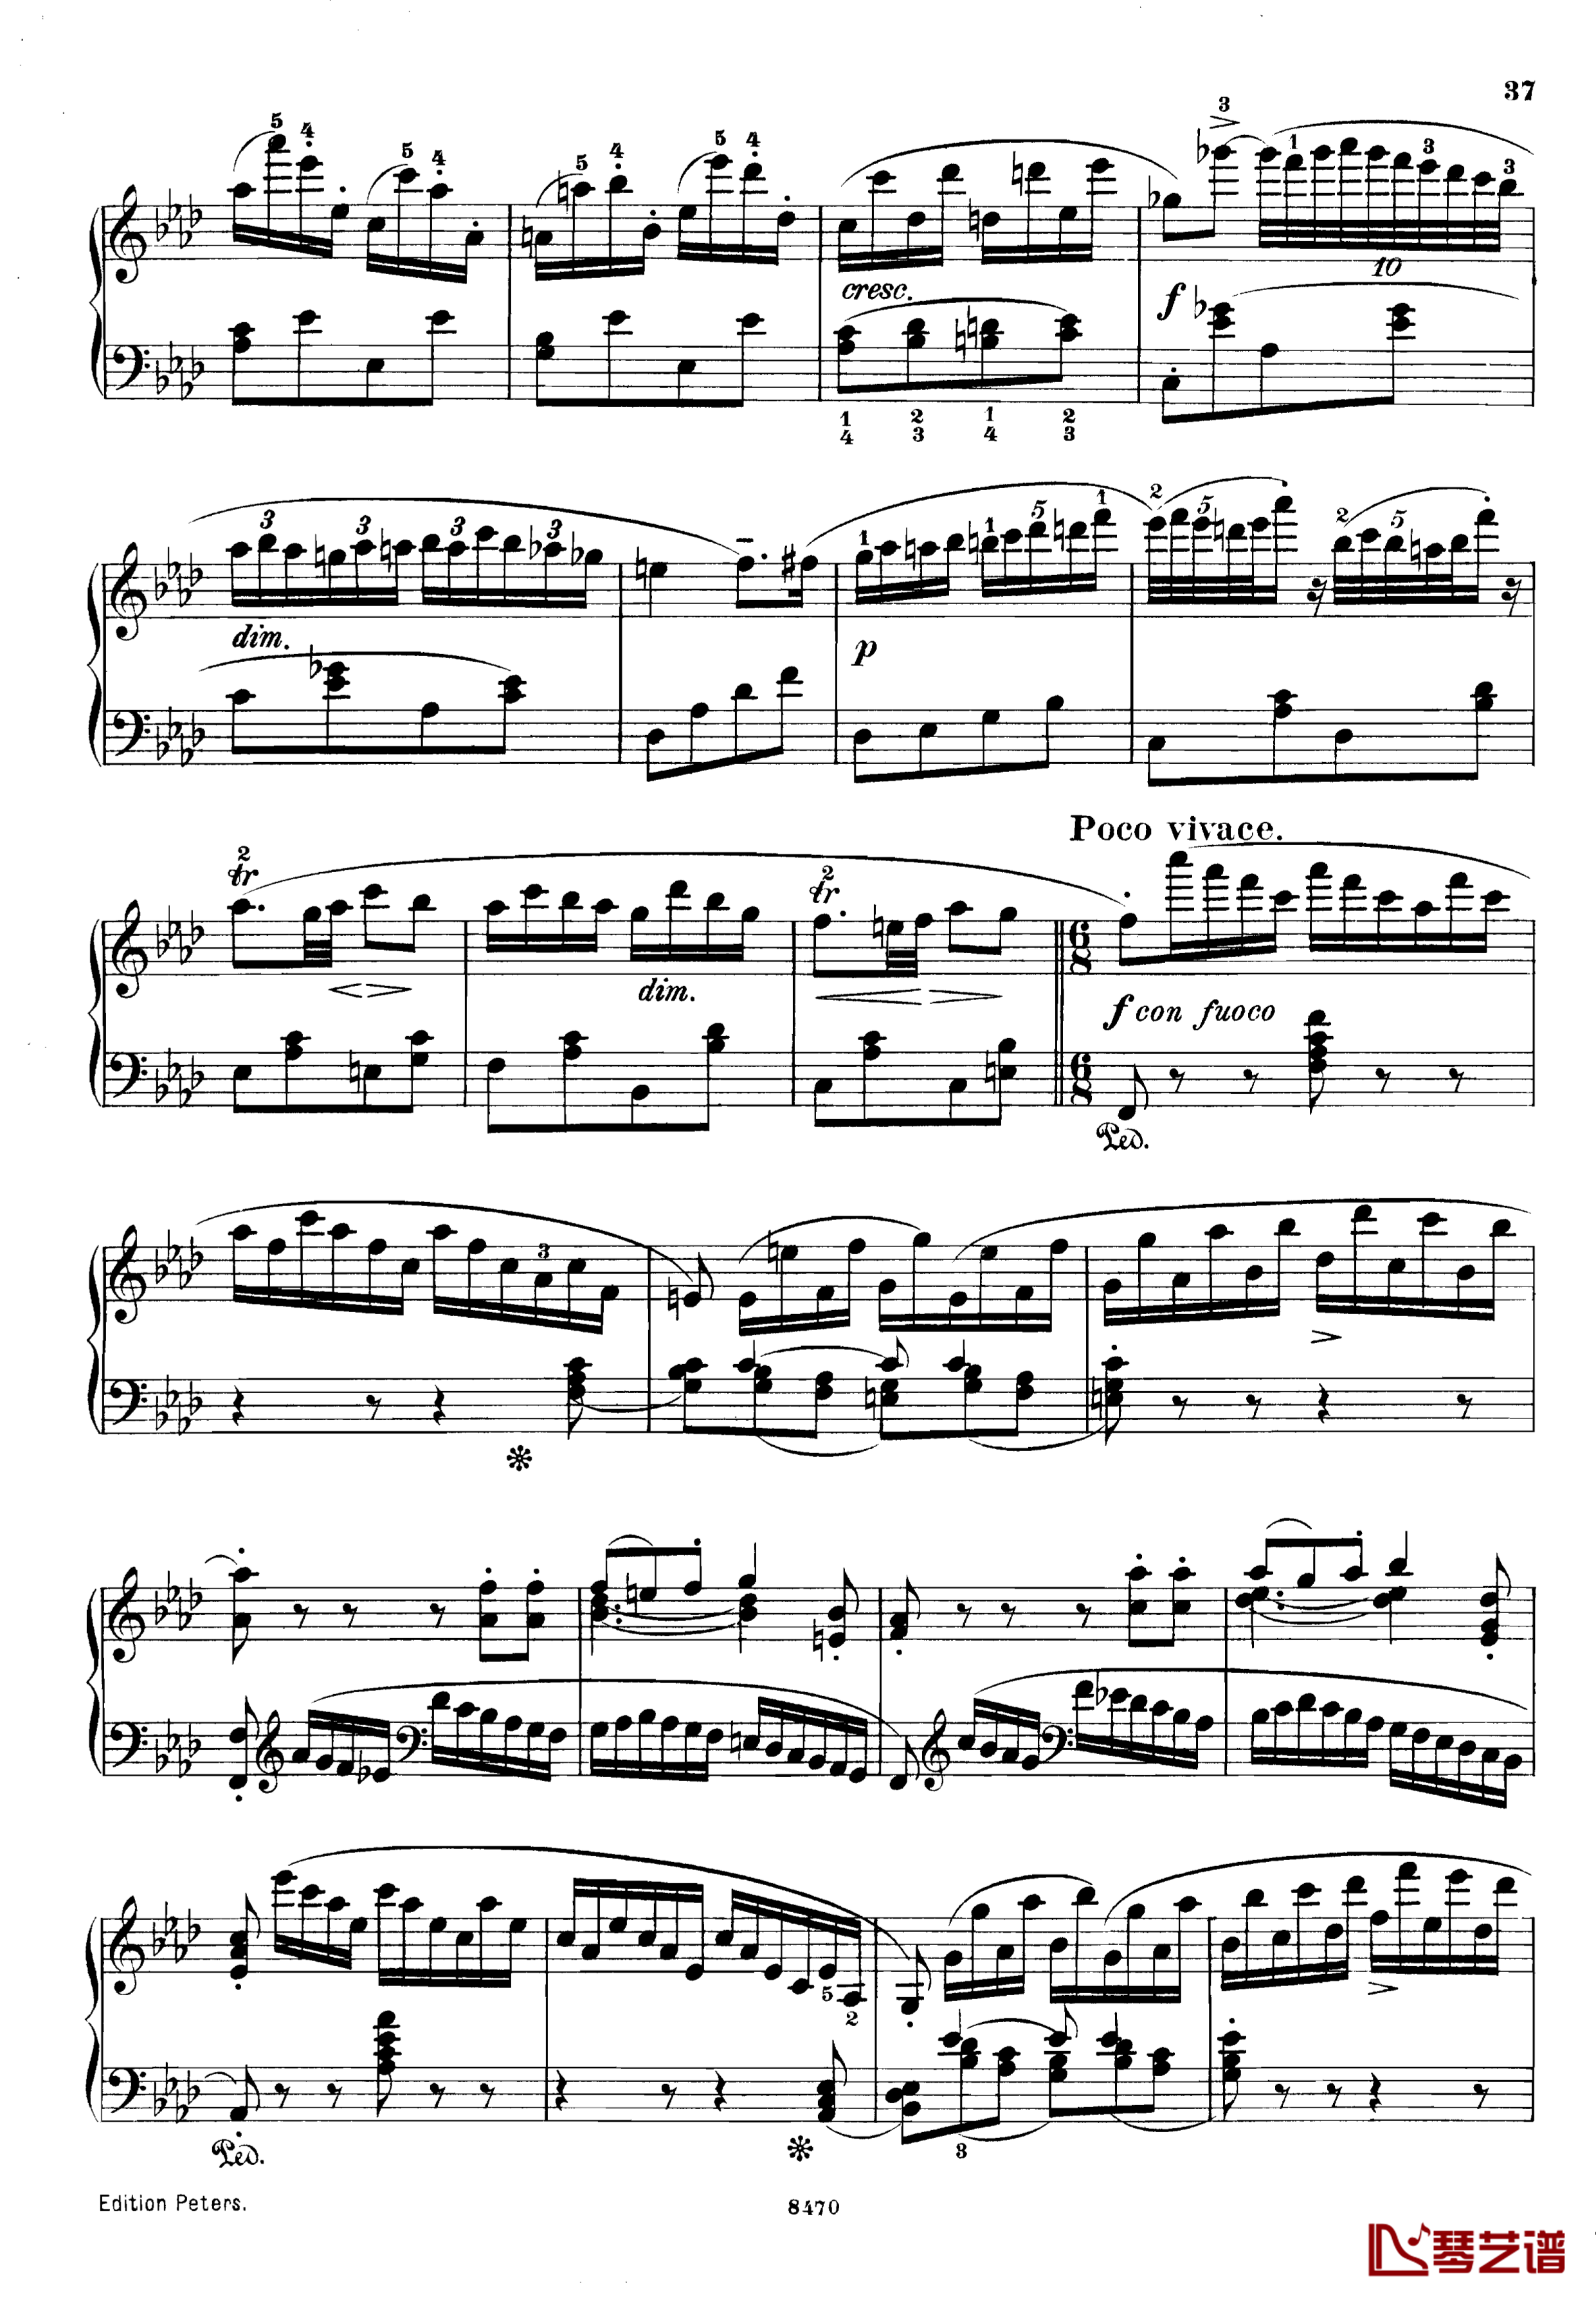 升c小调第三钢琴协奏曲Op.55钢琴谱-克里斯蒂安-里斯37